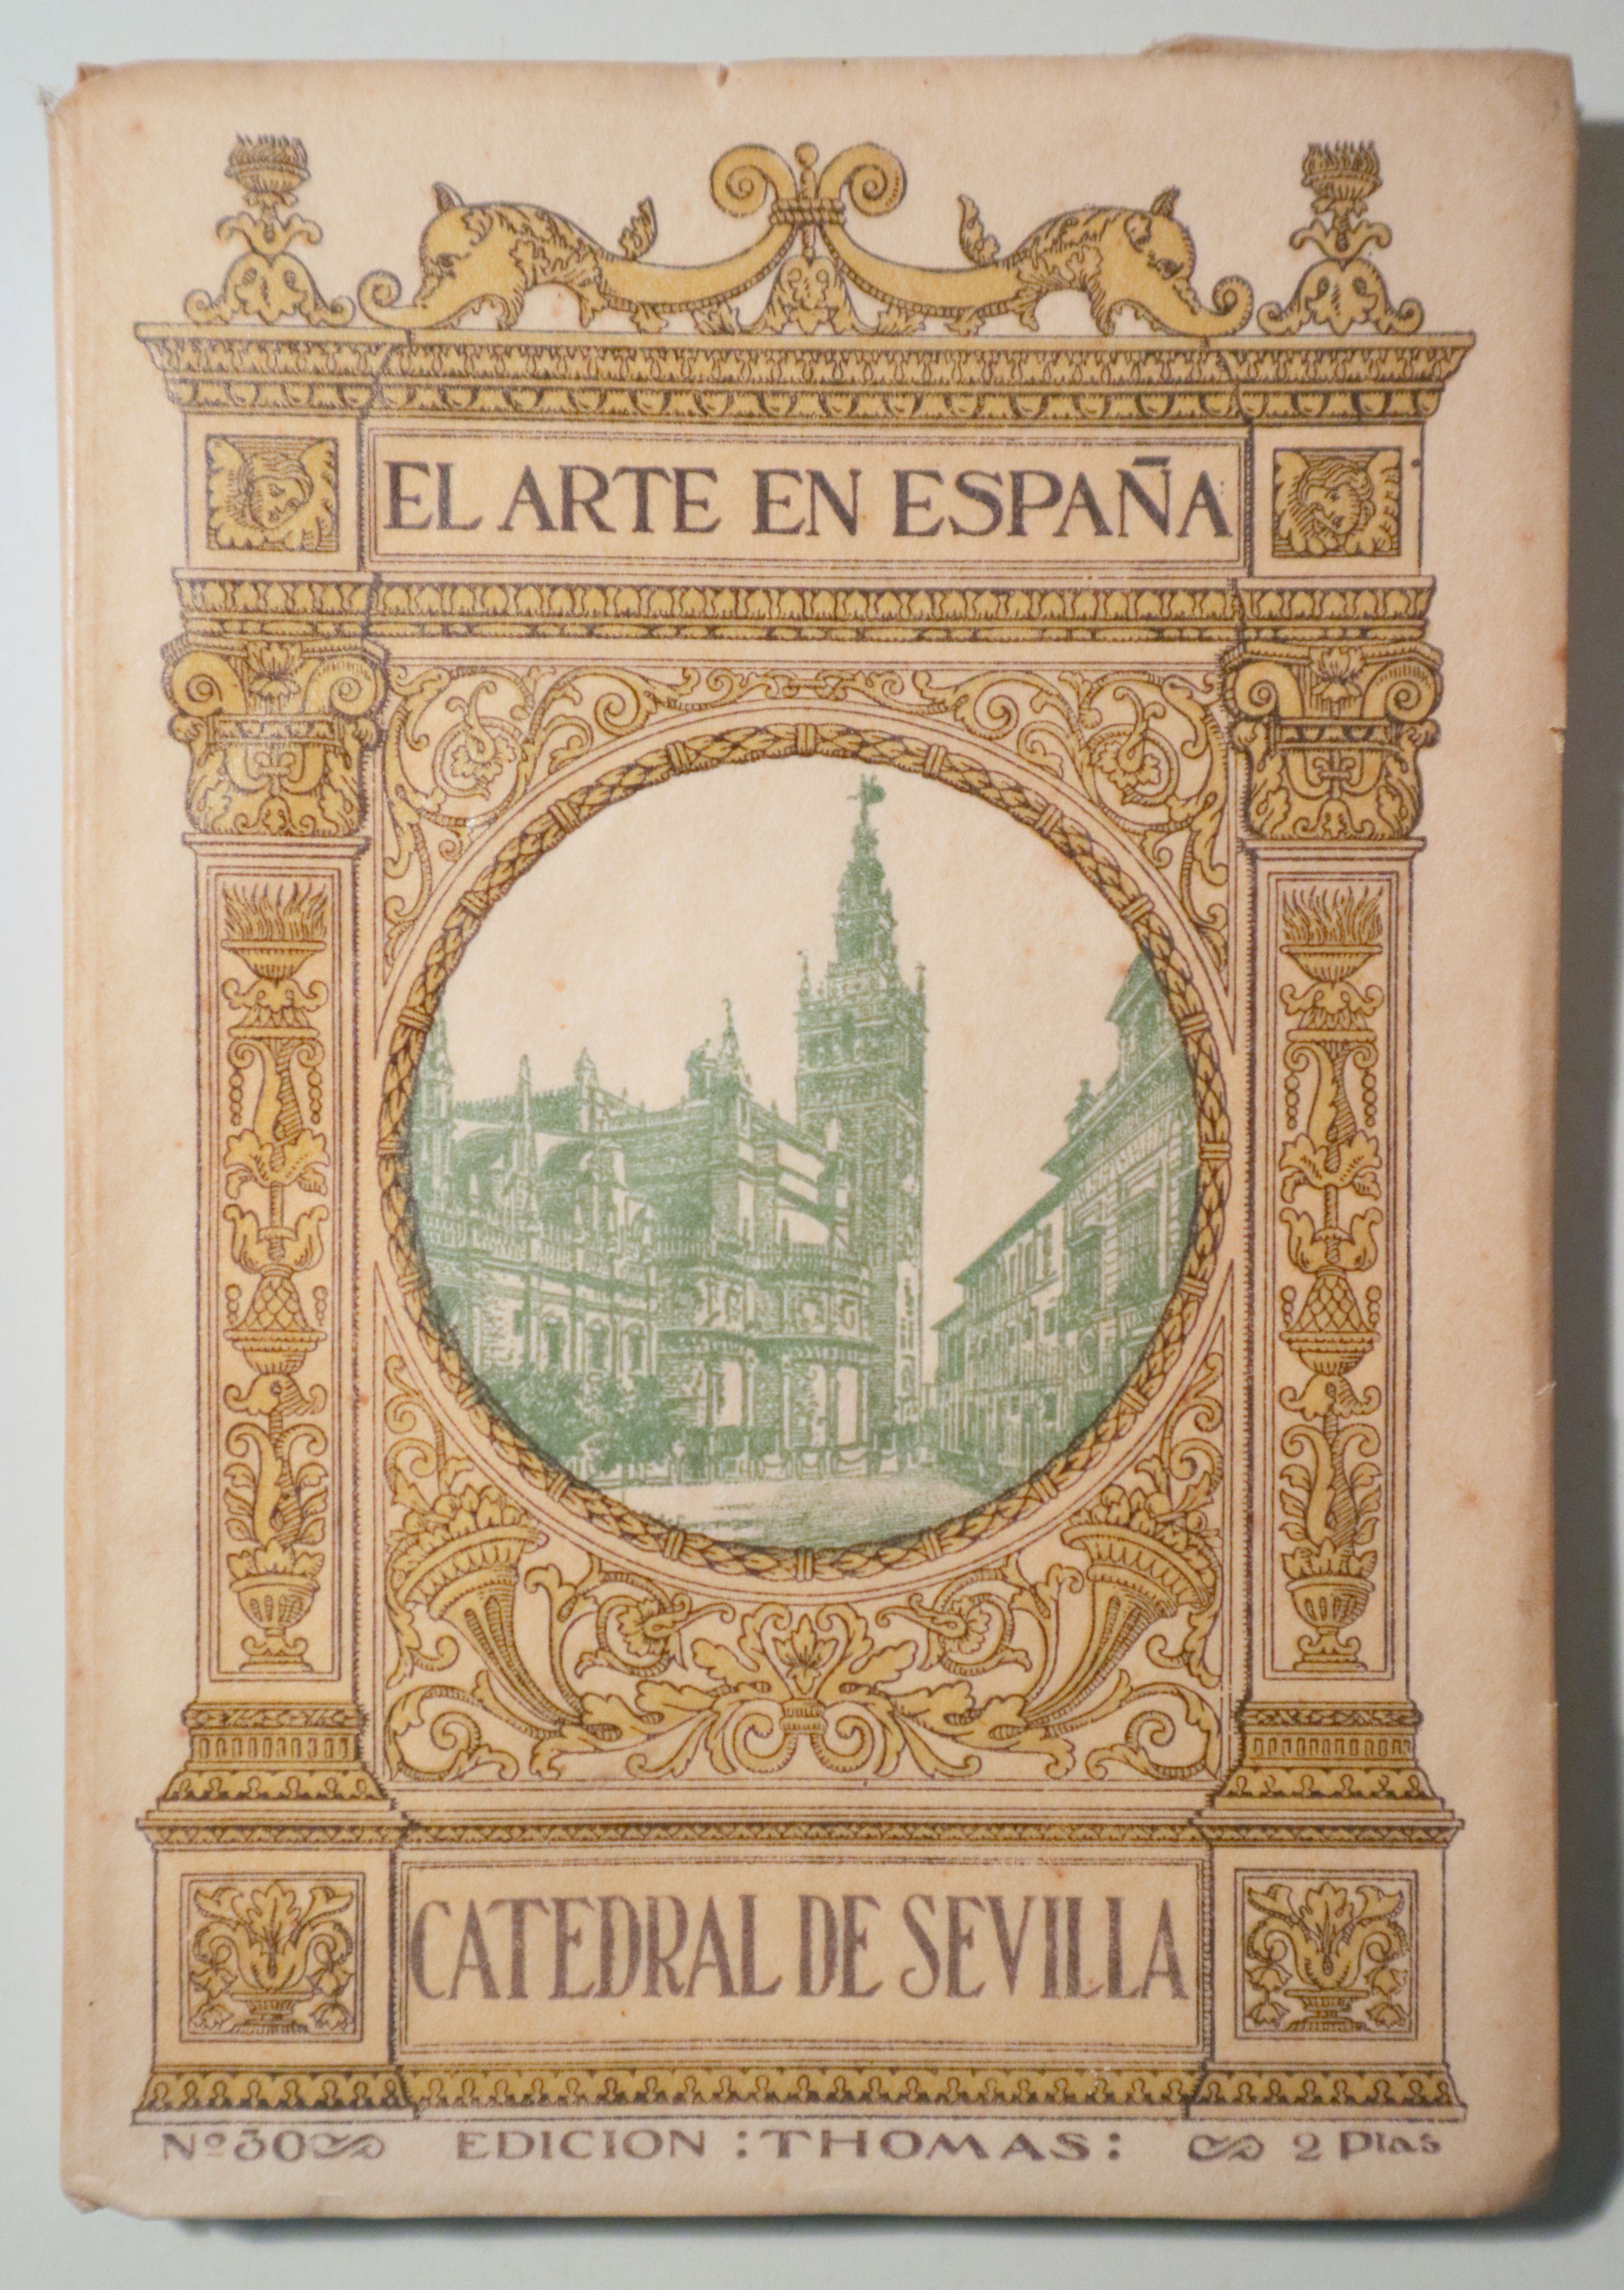 EL ARTE EN ESPAÑA nº 30. La Catedral de Sevilla I - Barcelona s/f - Muy ilustrado